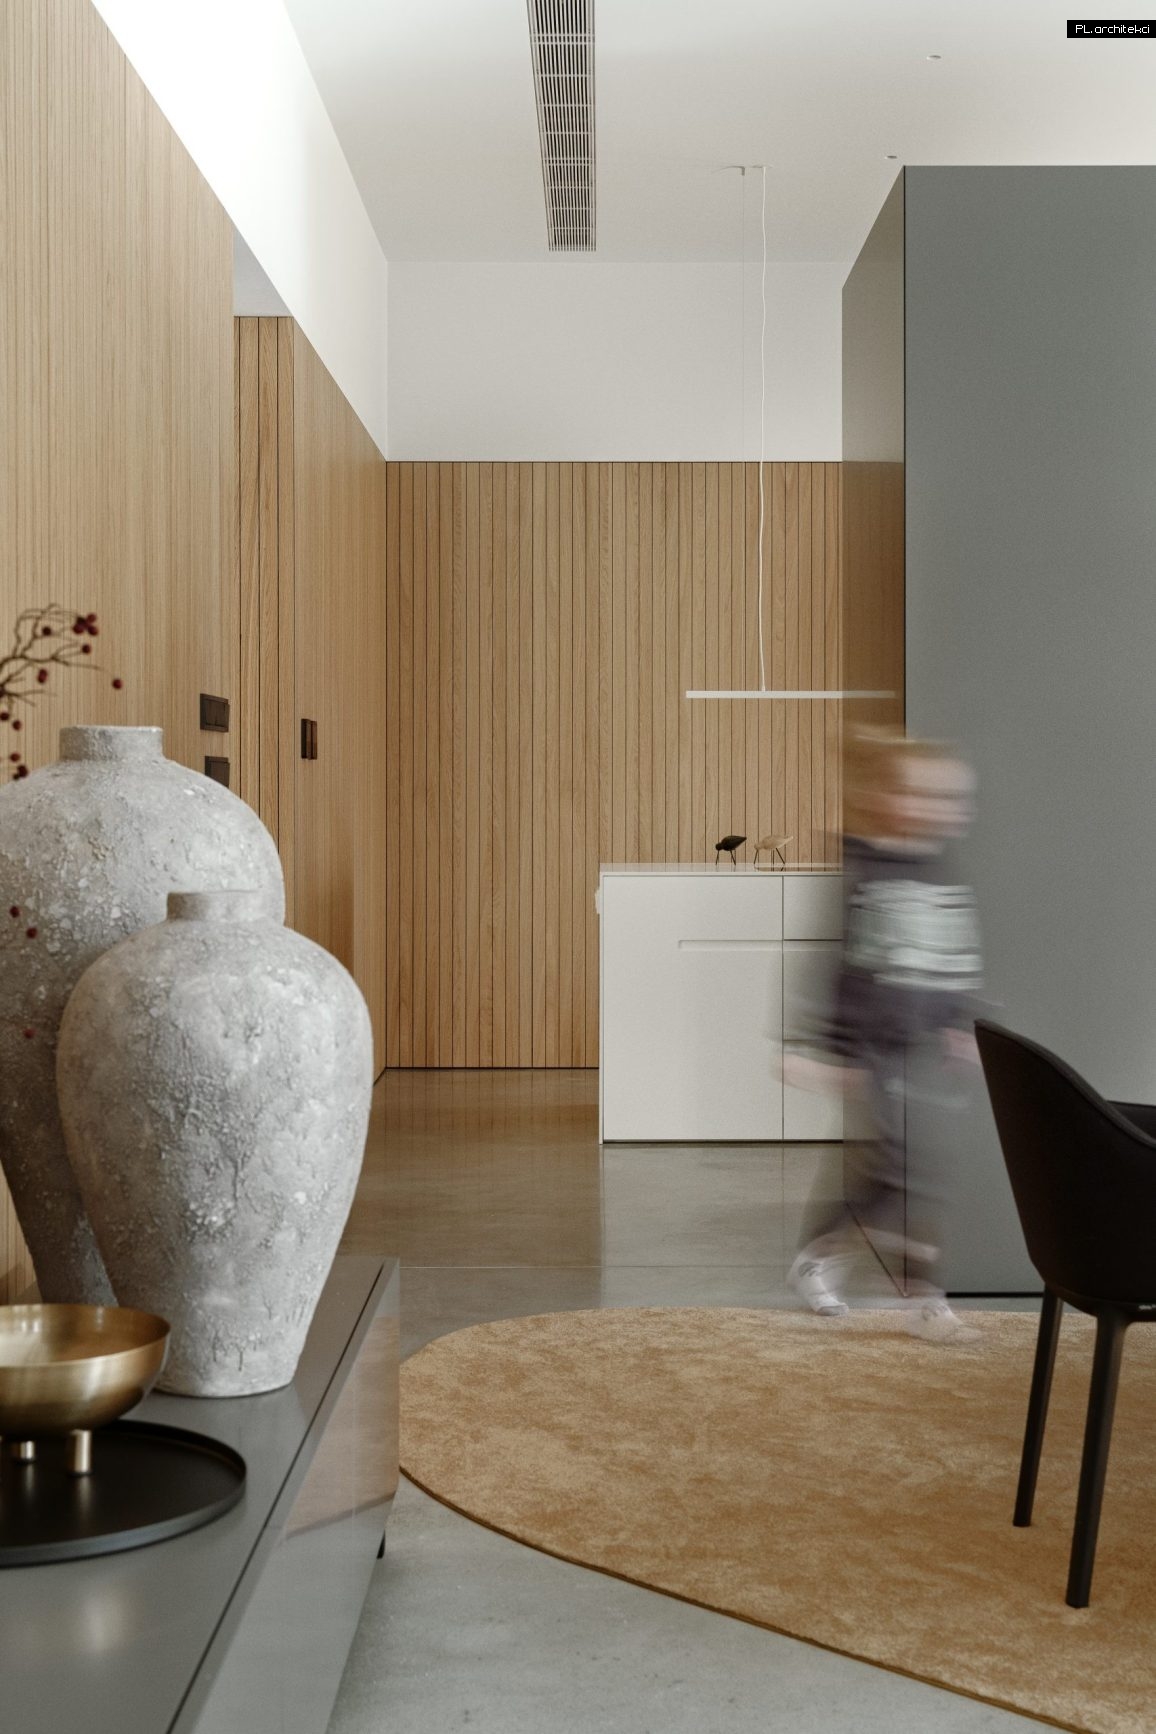 wnętrze domu betonowego przy lesie minimalistyczny design plarchitekci